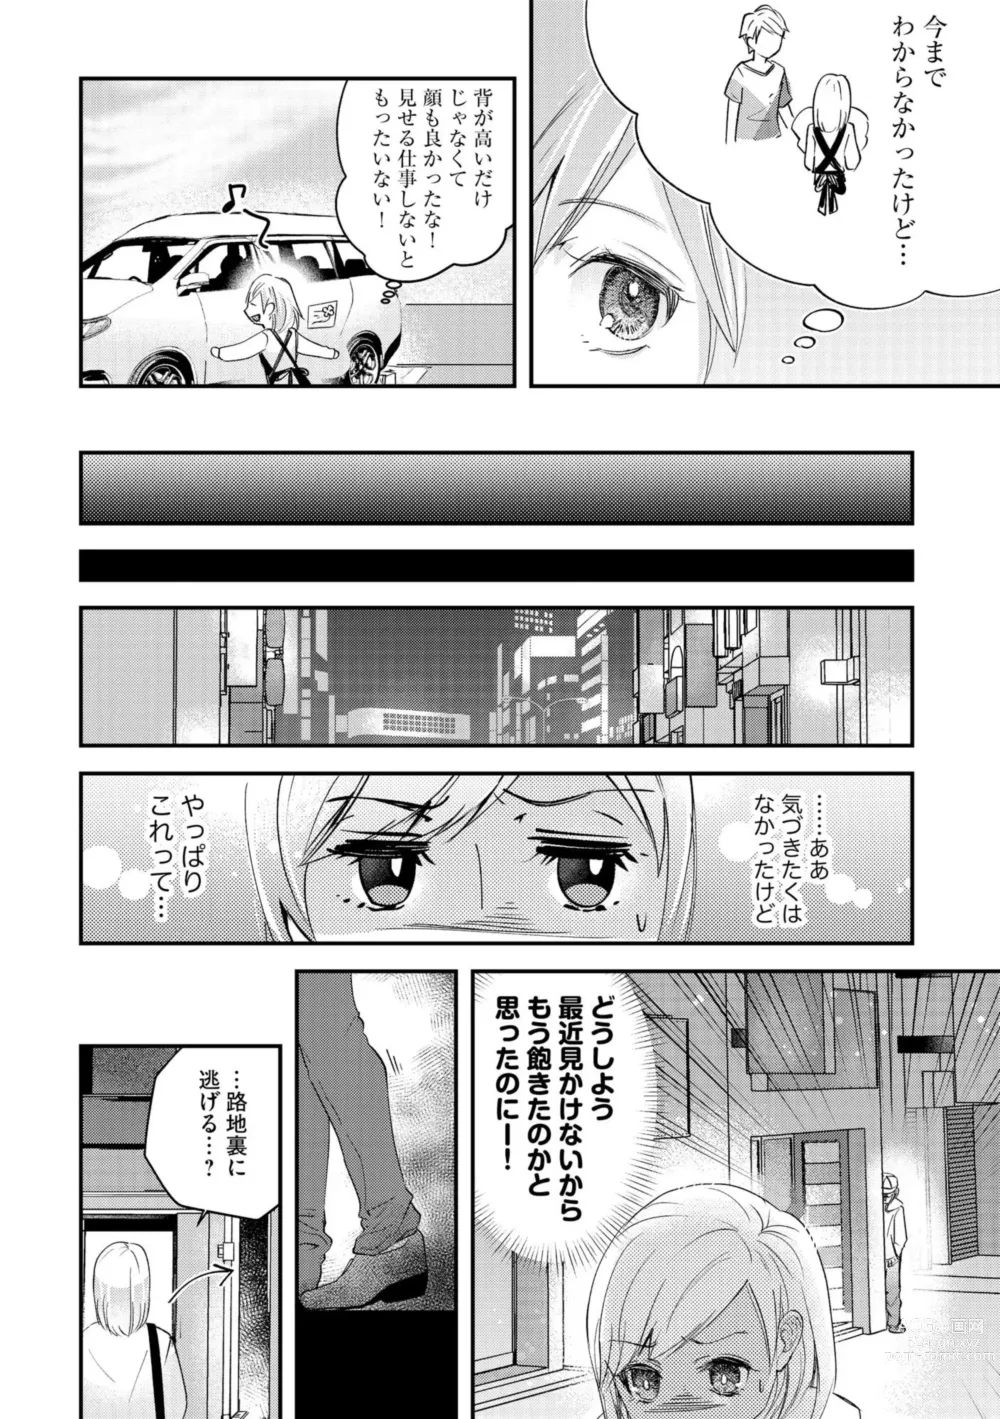 Page 8 of manga Karada Kakusa 40 cm no Amaicha Ressun XL-kyū no Okkina Are de Okumade Guriguri 1